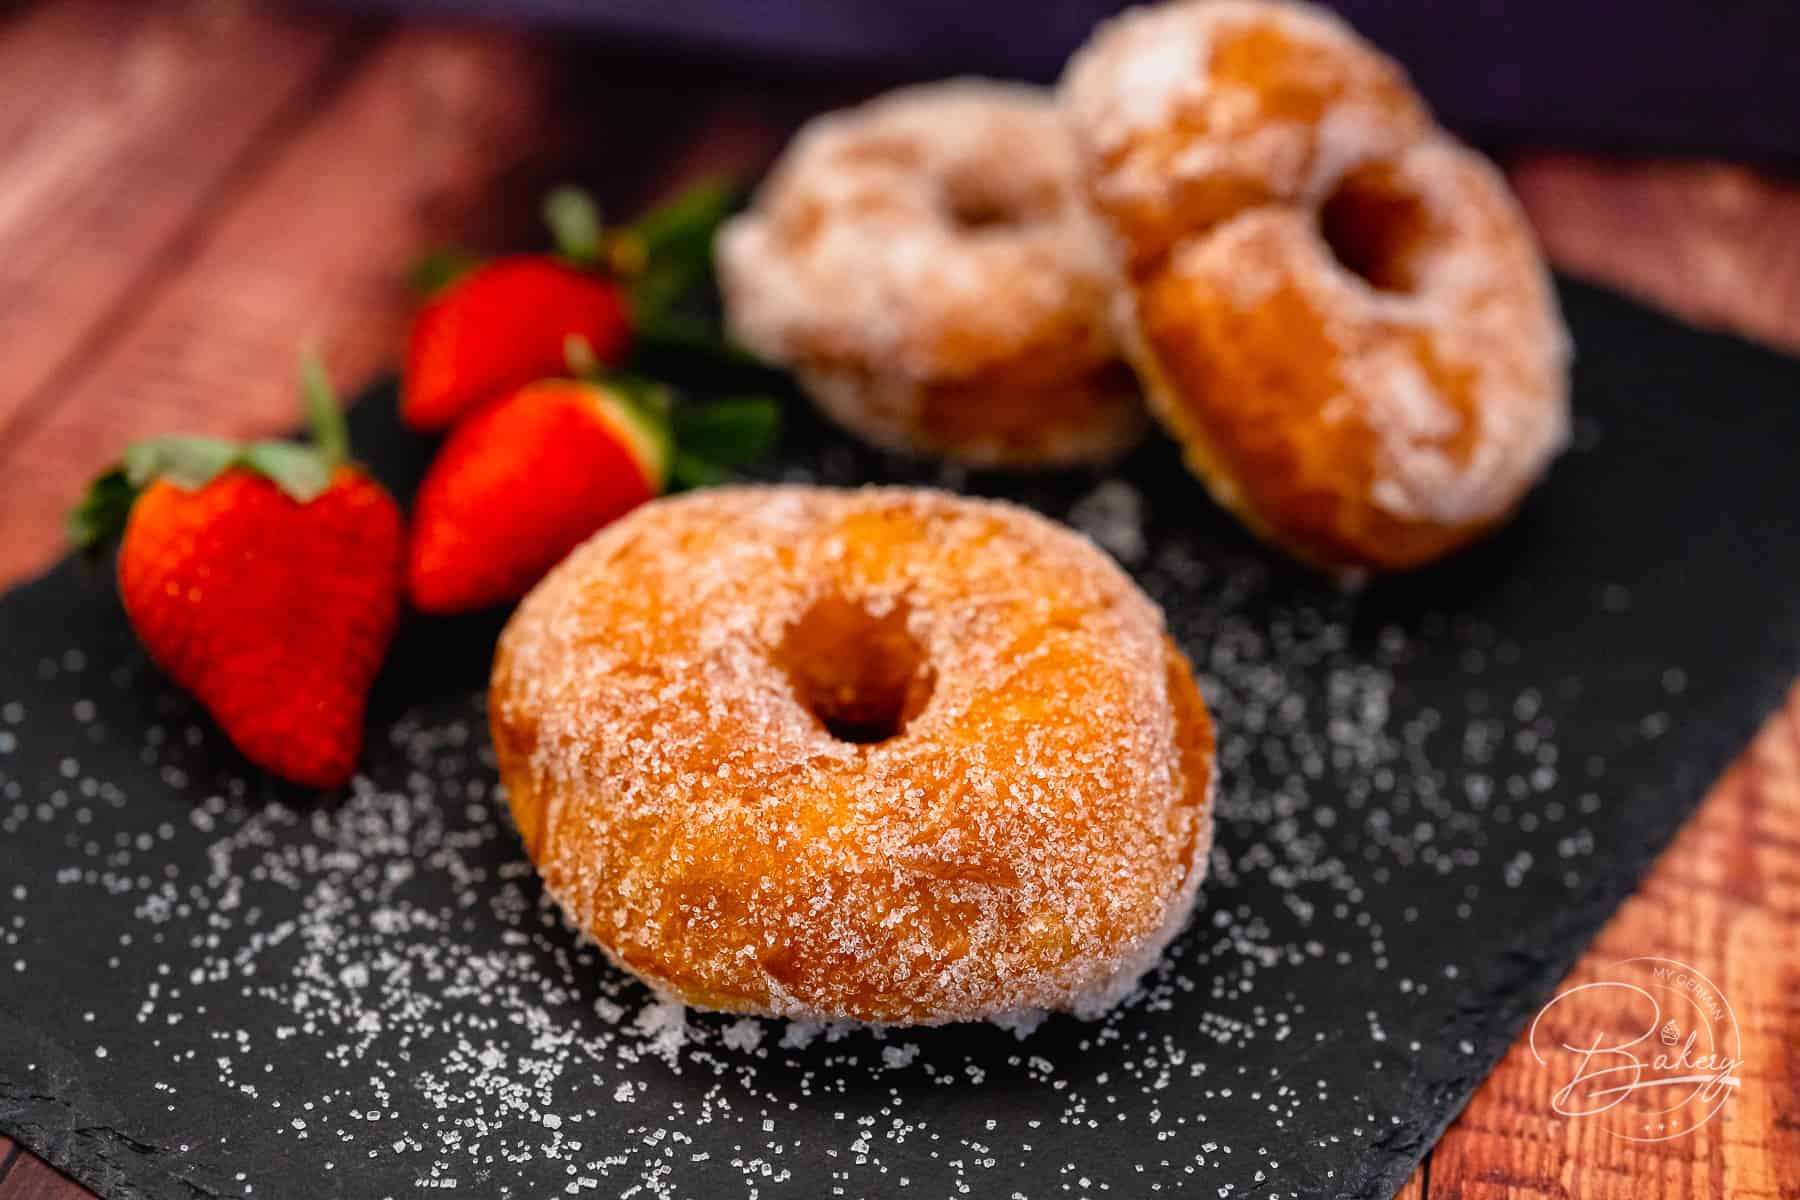 Donuts selber machen - einfaches Rezept - wie Berliner, Pfannkuchen, Krapfen - Donuts Rezept - einfach selber backen